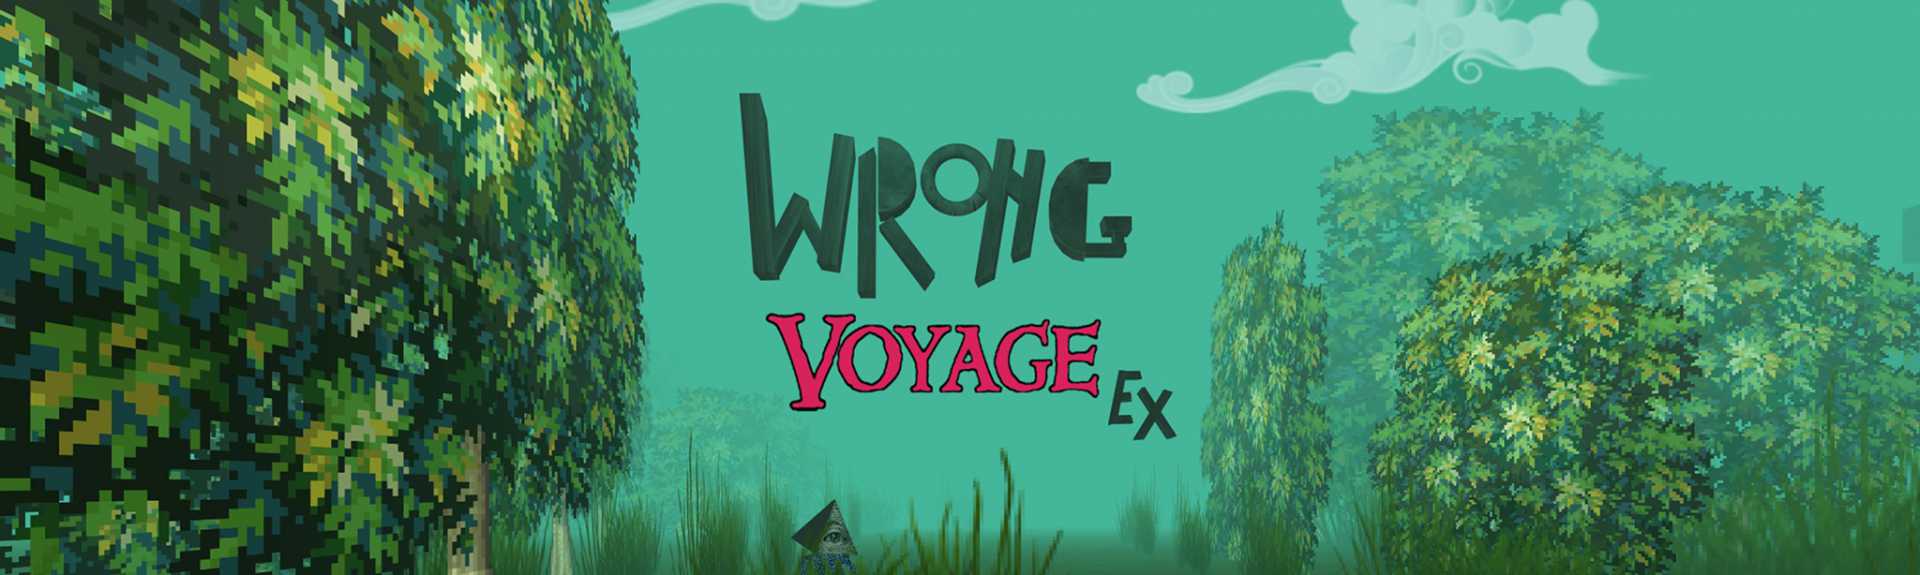 Wrong Voyage Ex